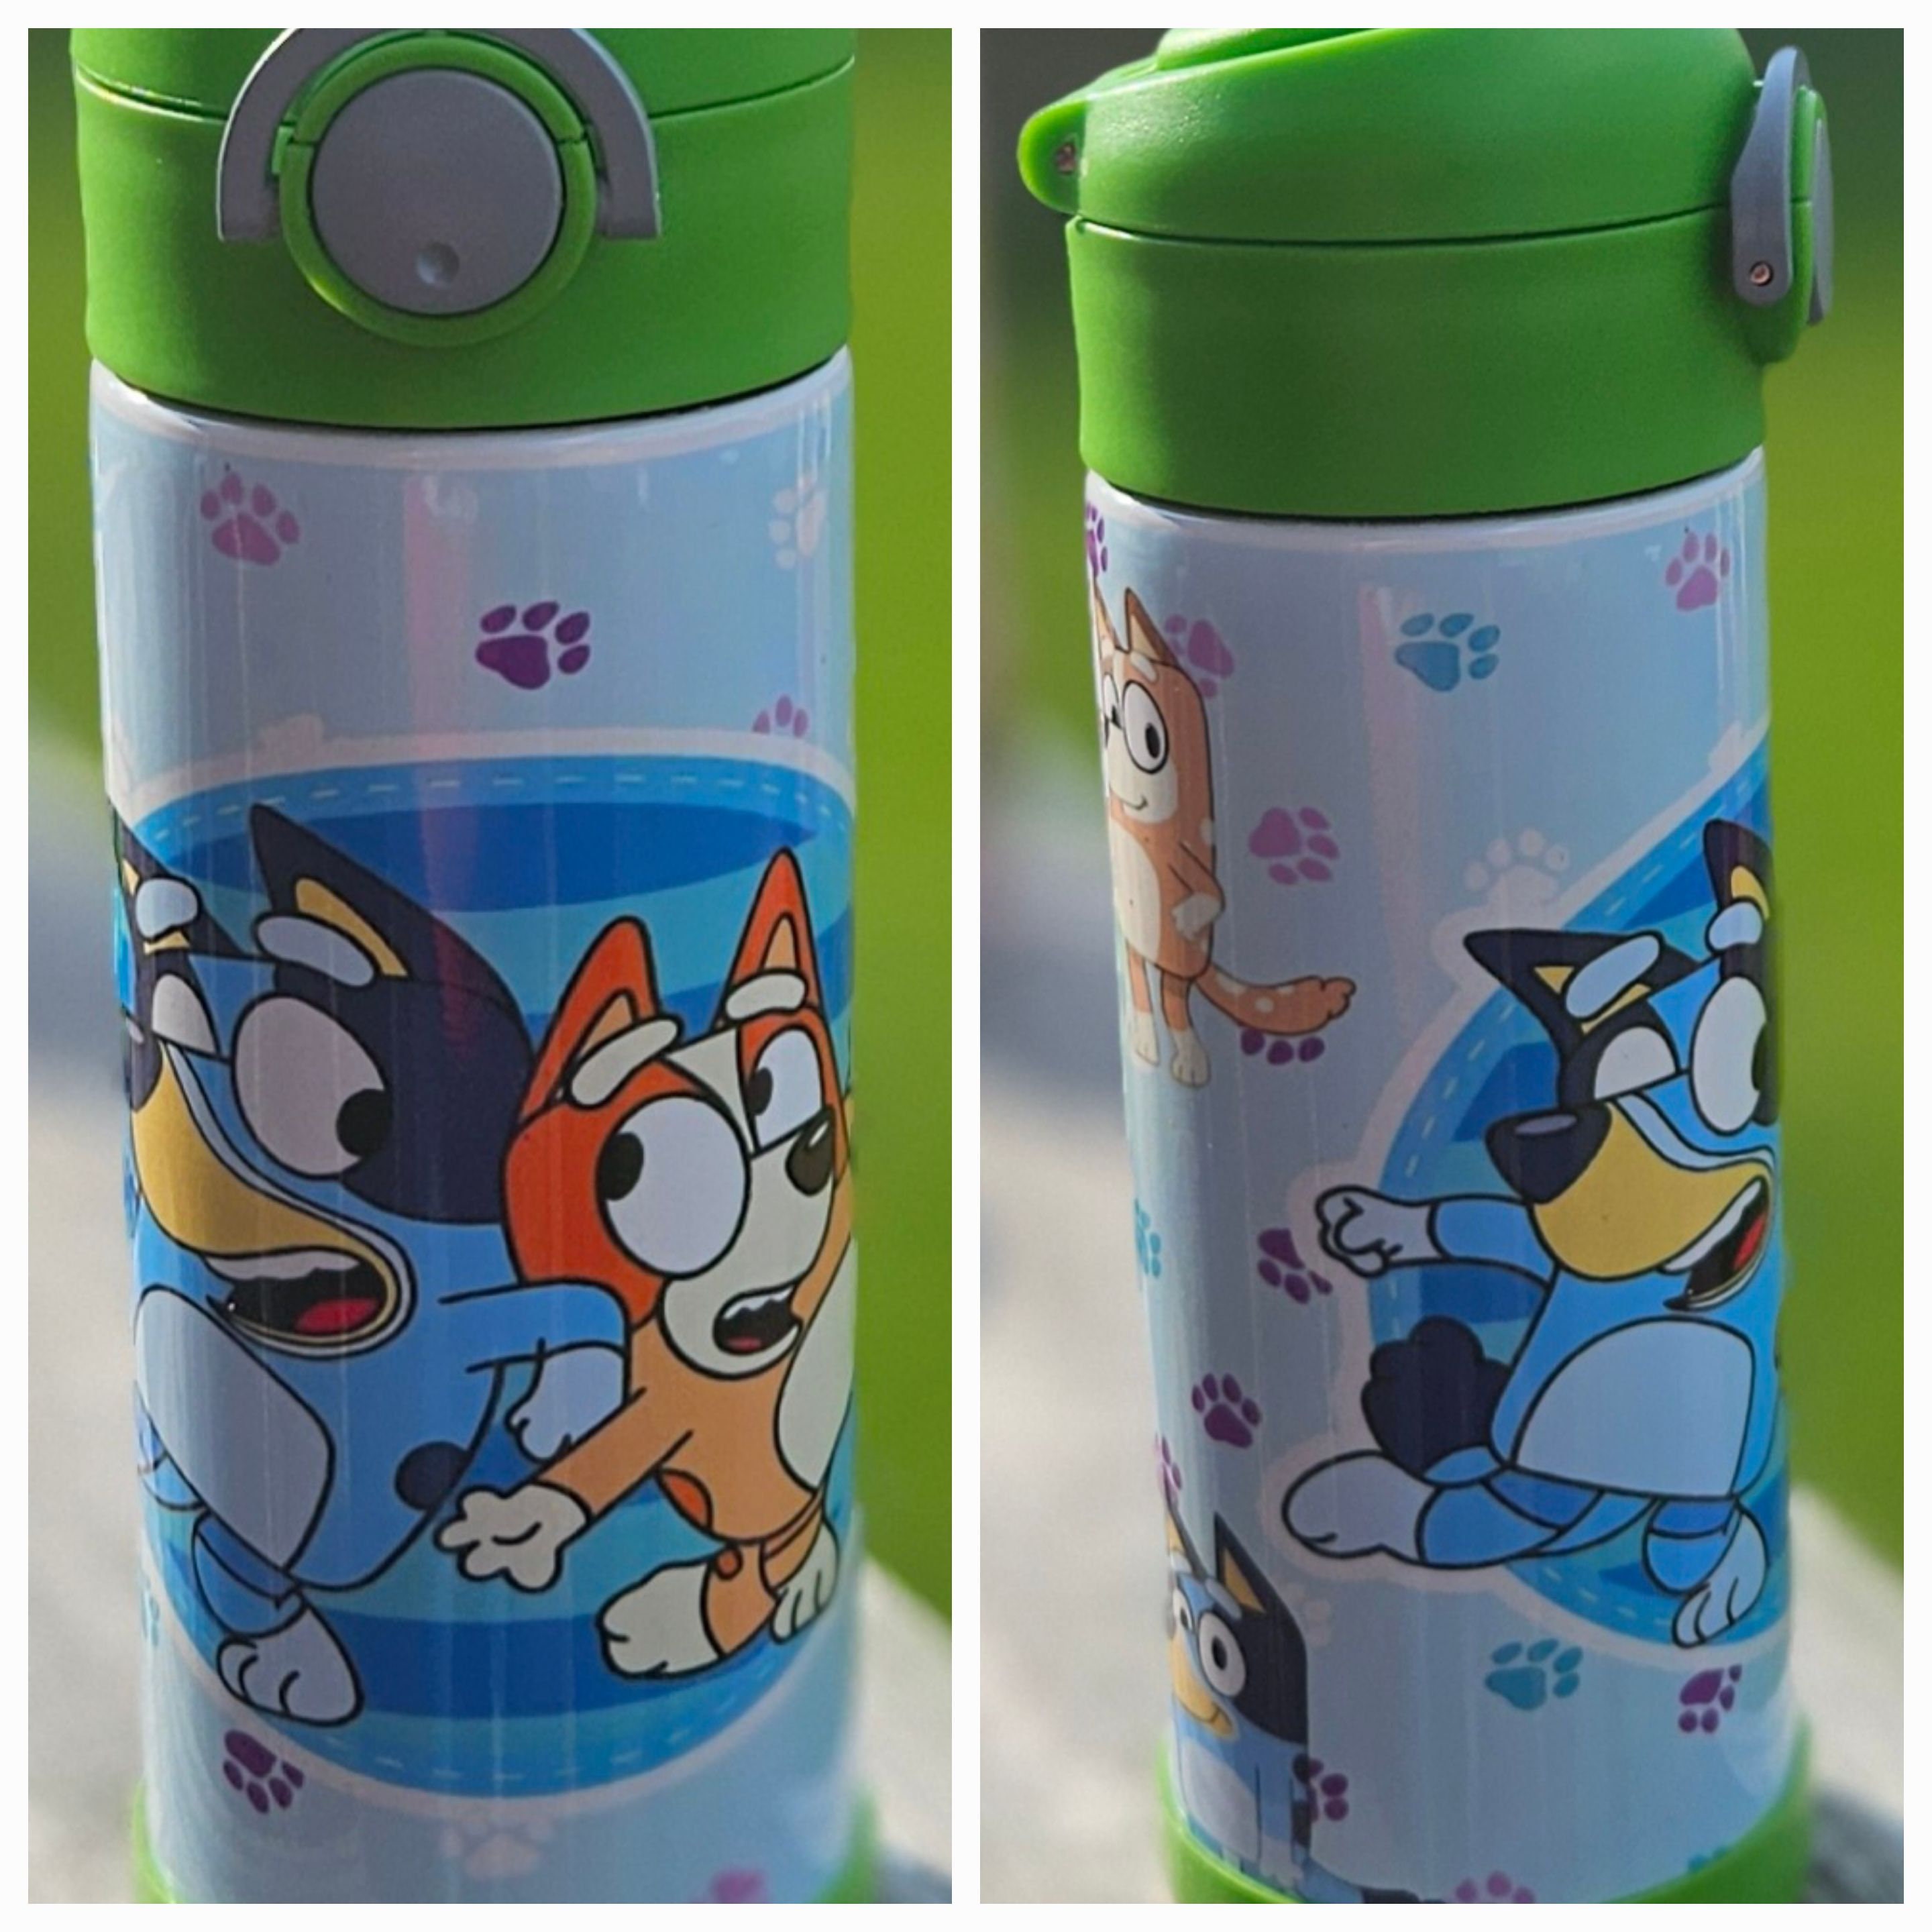 Qoo10 - Water Bottle Holder. Carrier. Tumbler Holder. Children